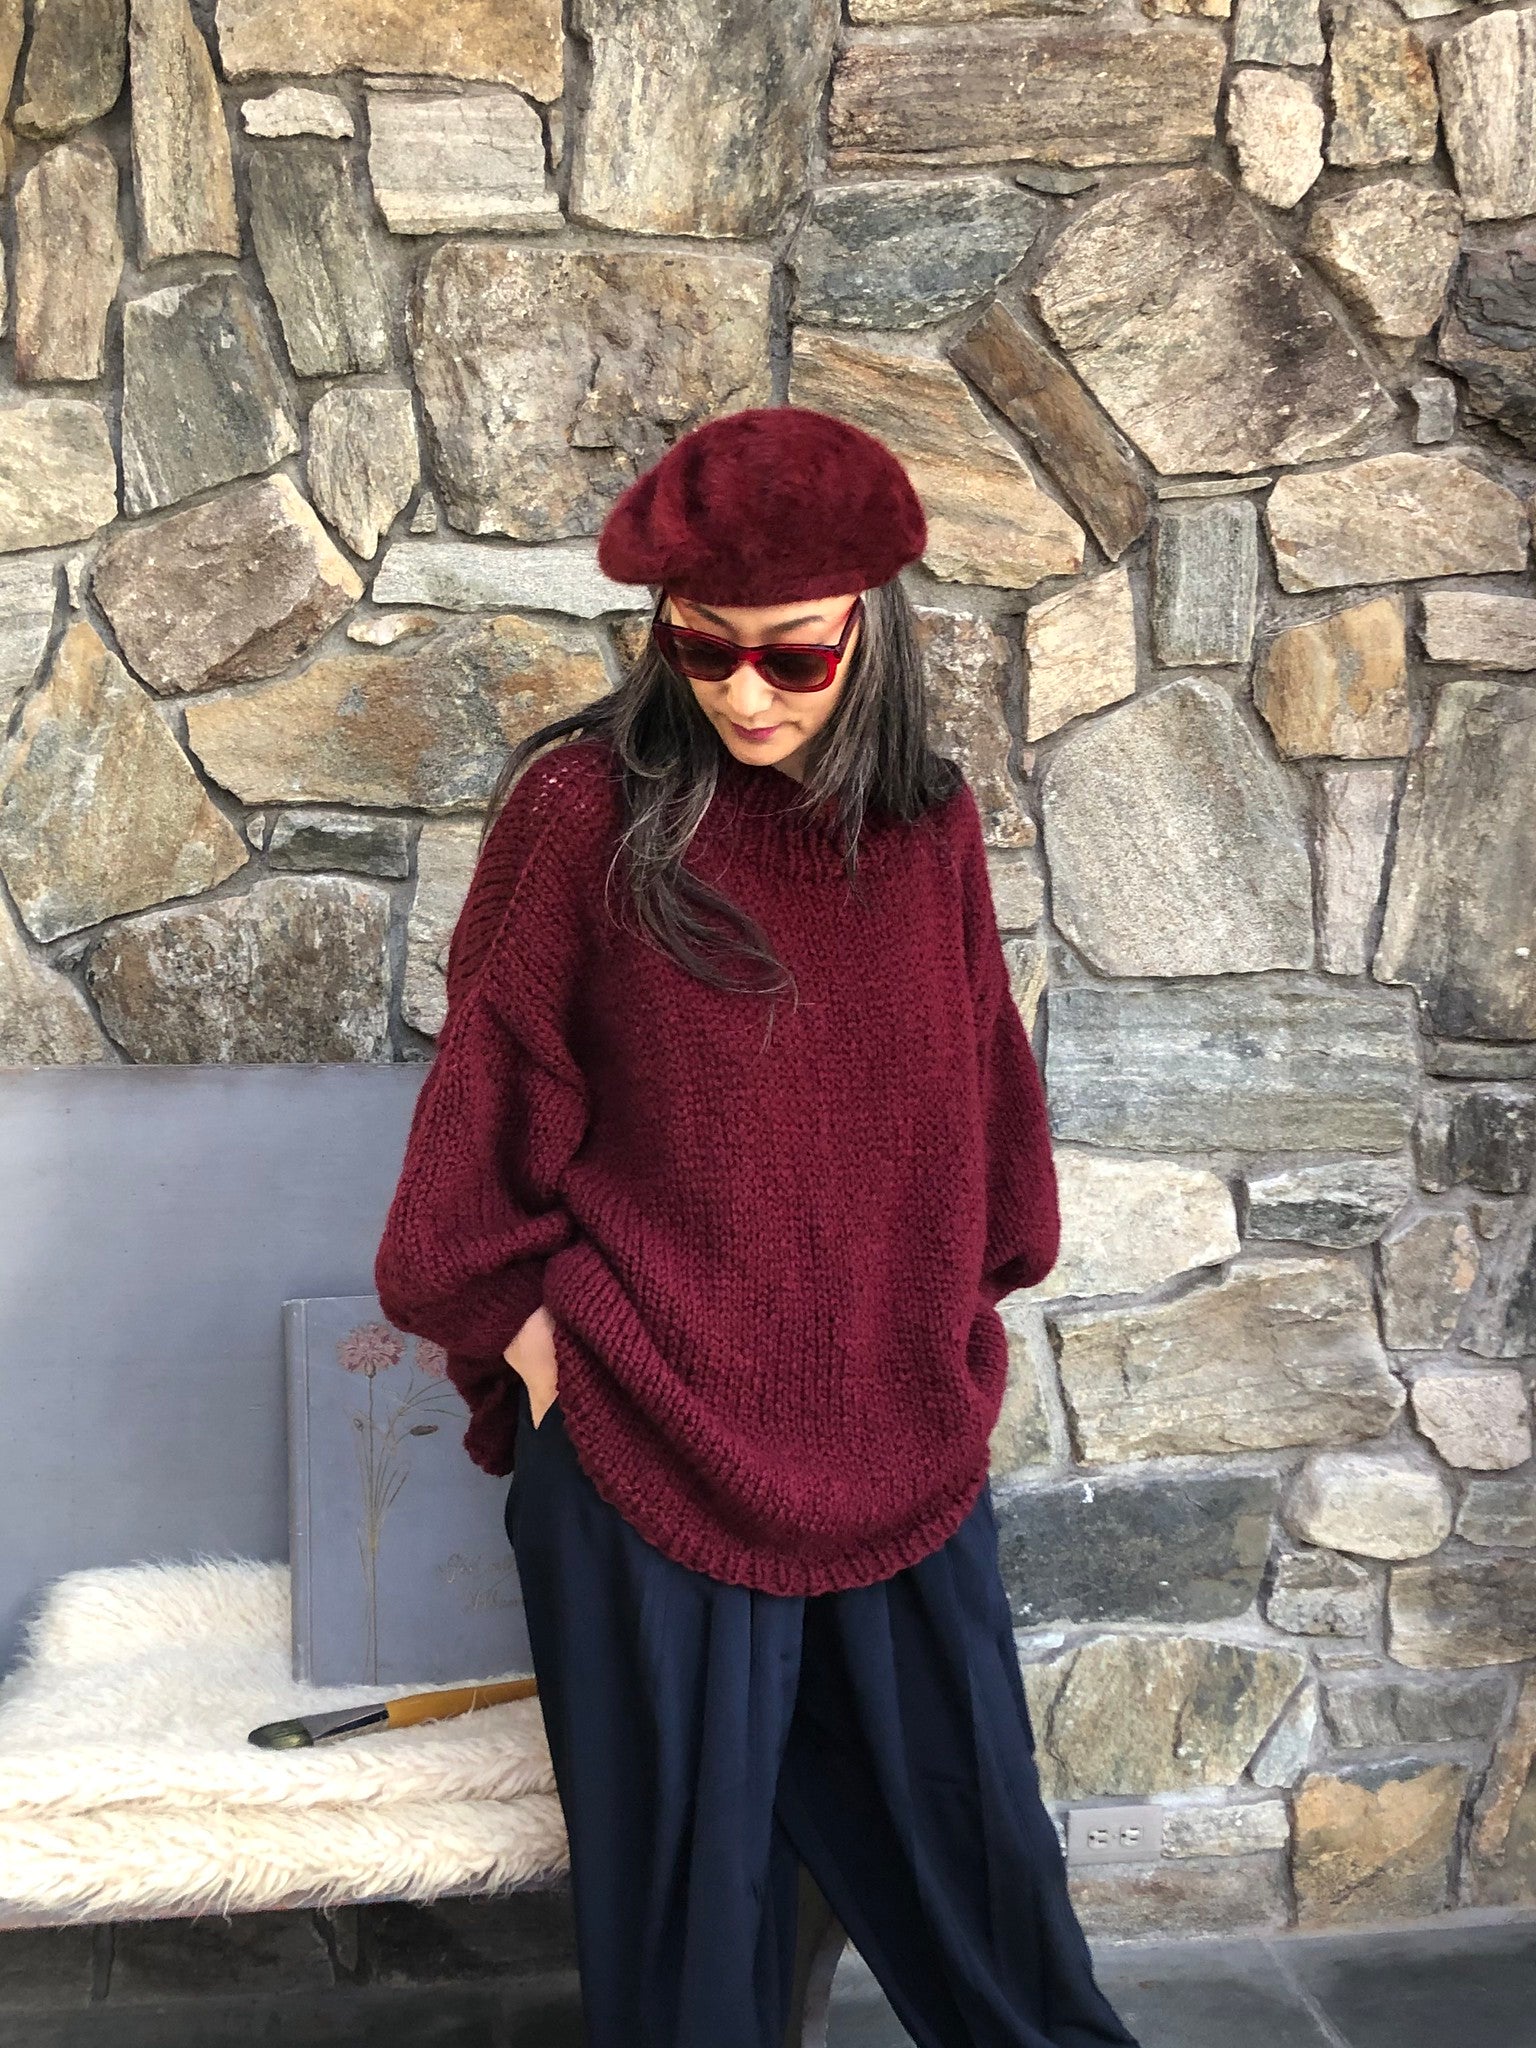 DIY Kit - My Favorite Sweater - Dream (Merino Worsted)